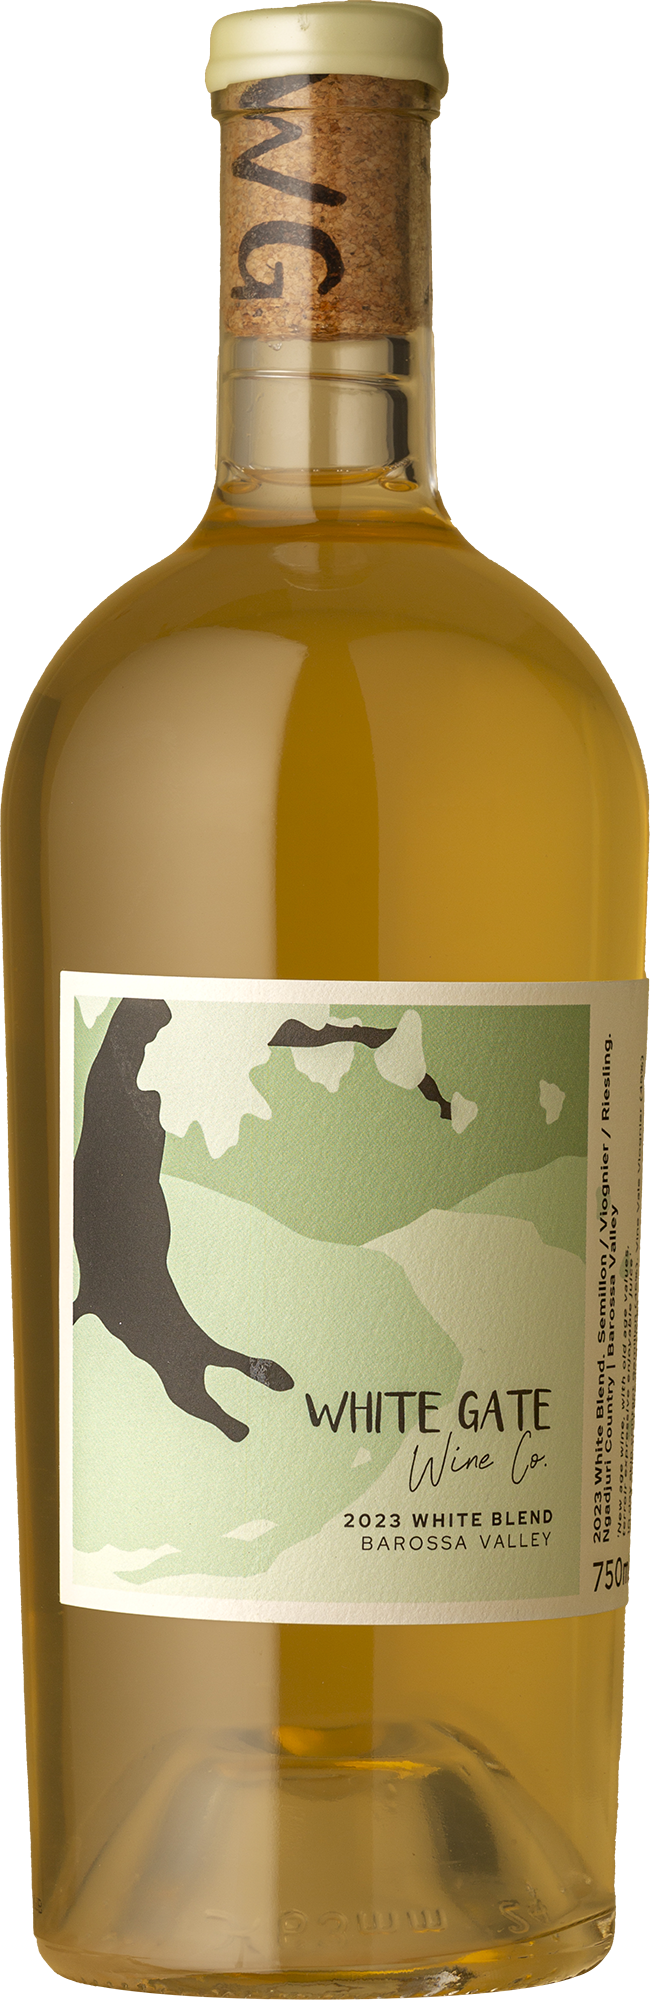 White Gate Wine Co - Semillon / Viognier / Riesling 2023 White Wine